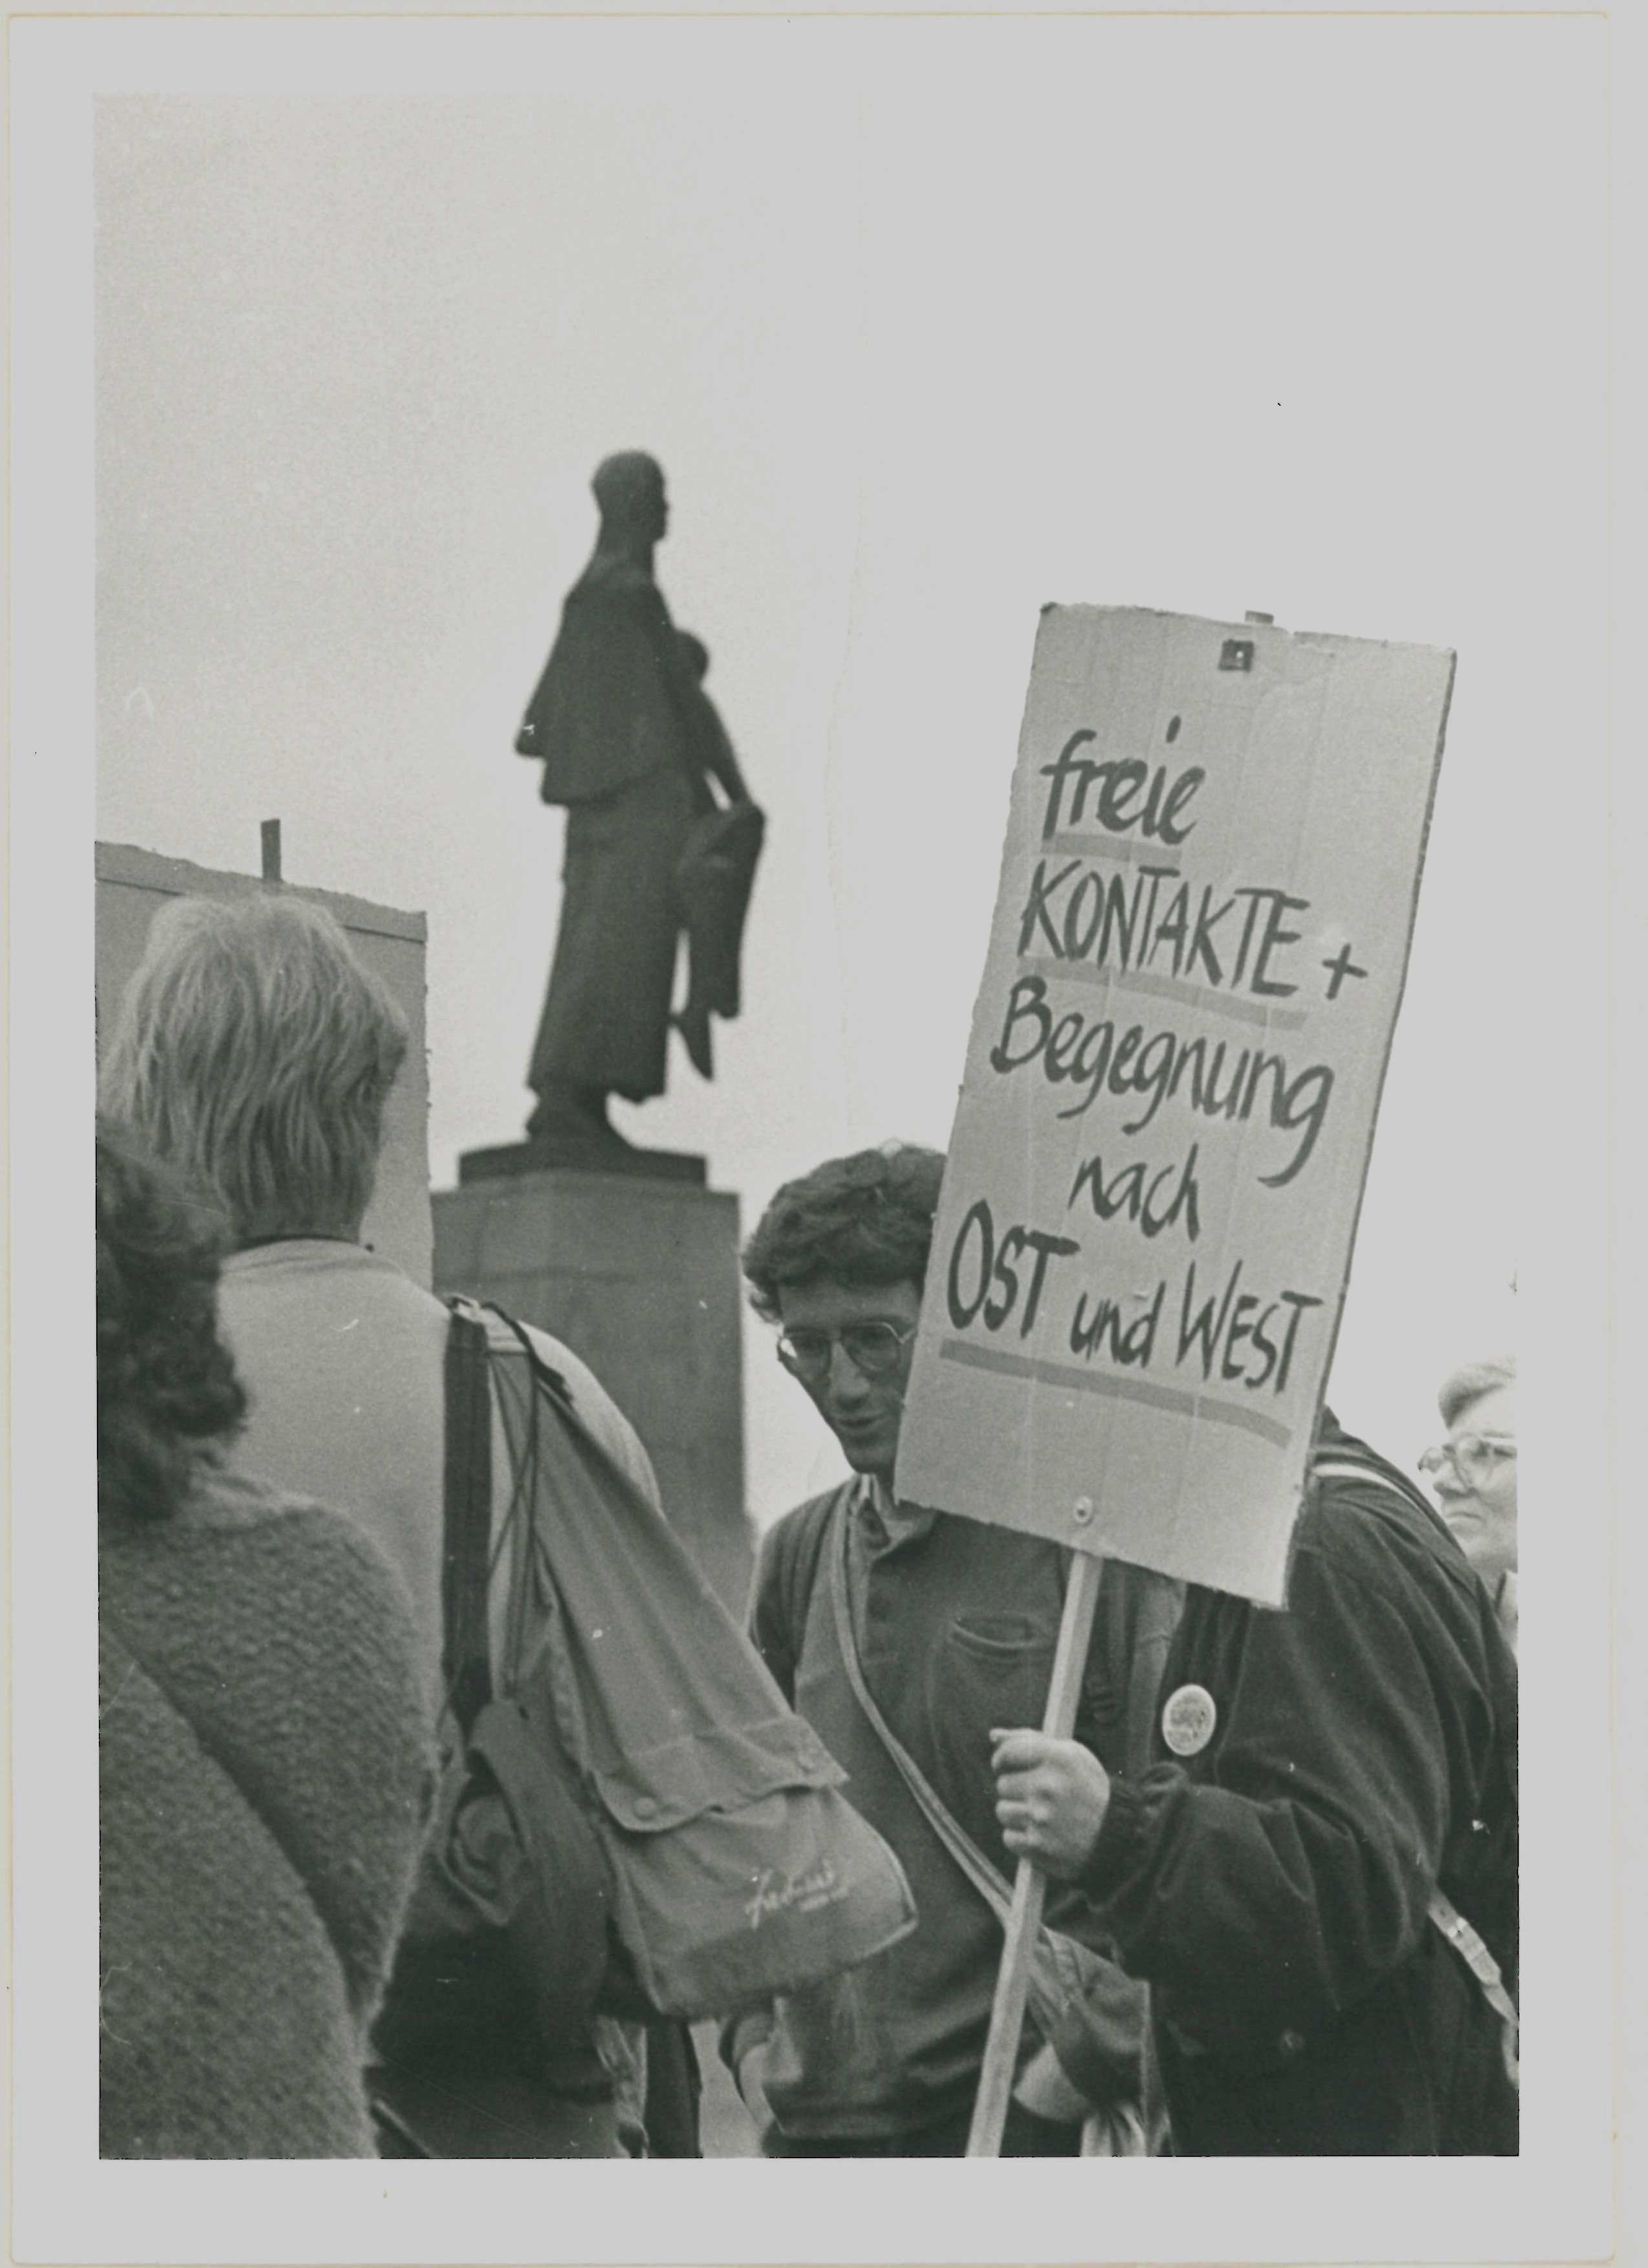 Olof-Palme-Marsch 1987: Plakat mit der Beschriftung: "freie Kontakte + Begegnung nach OST und West" (DDR Geschichtsmuseum im Dokumentationszentrum Perleberg CC BY-SA)